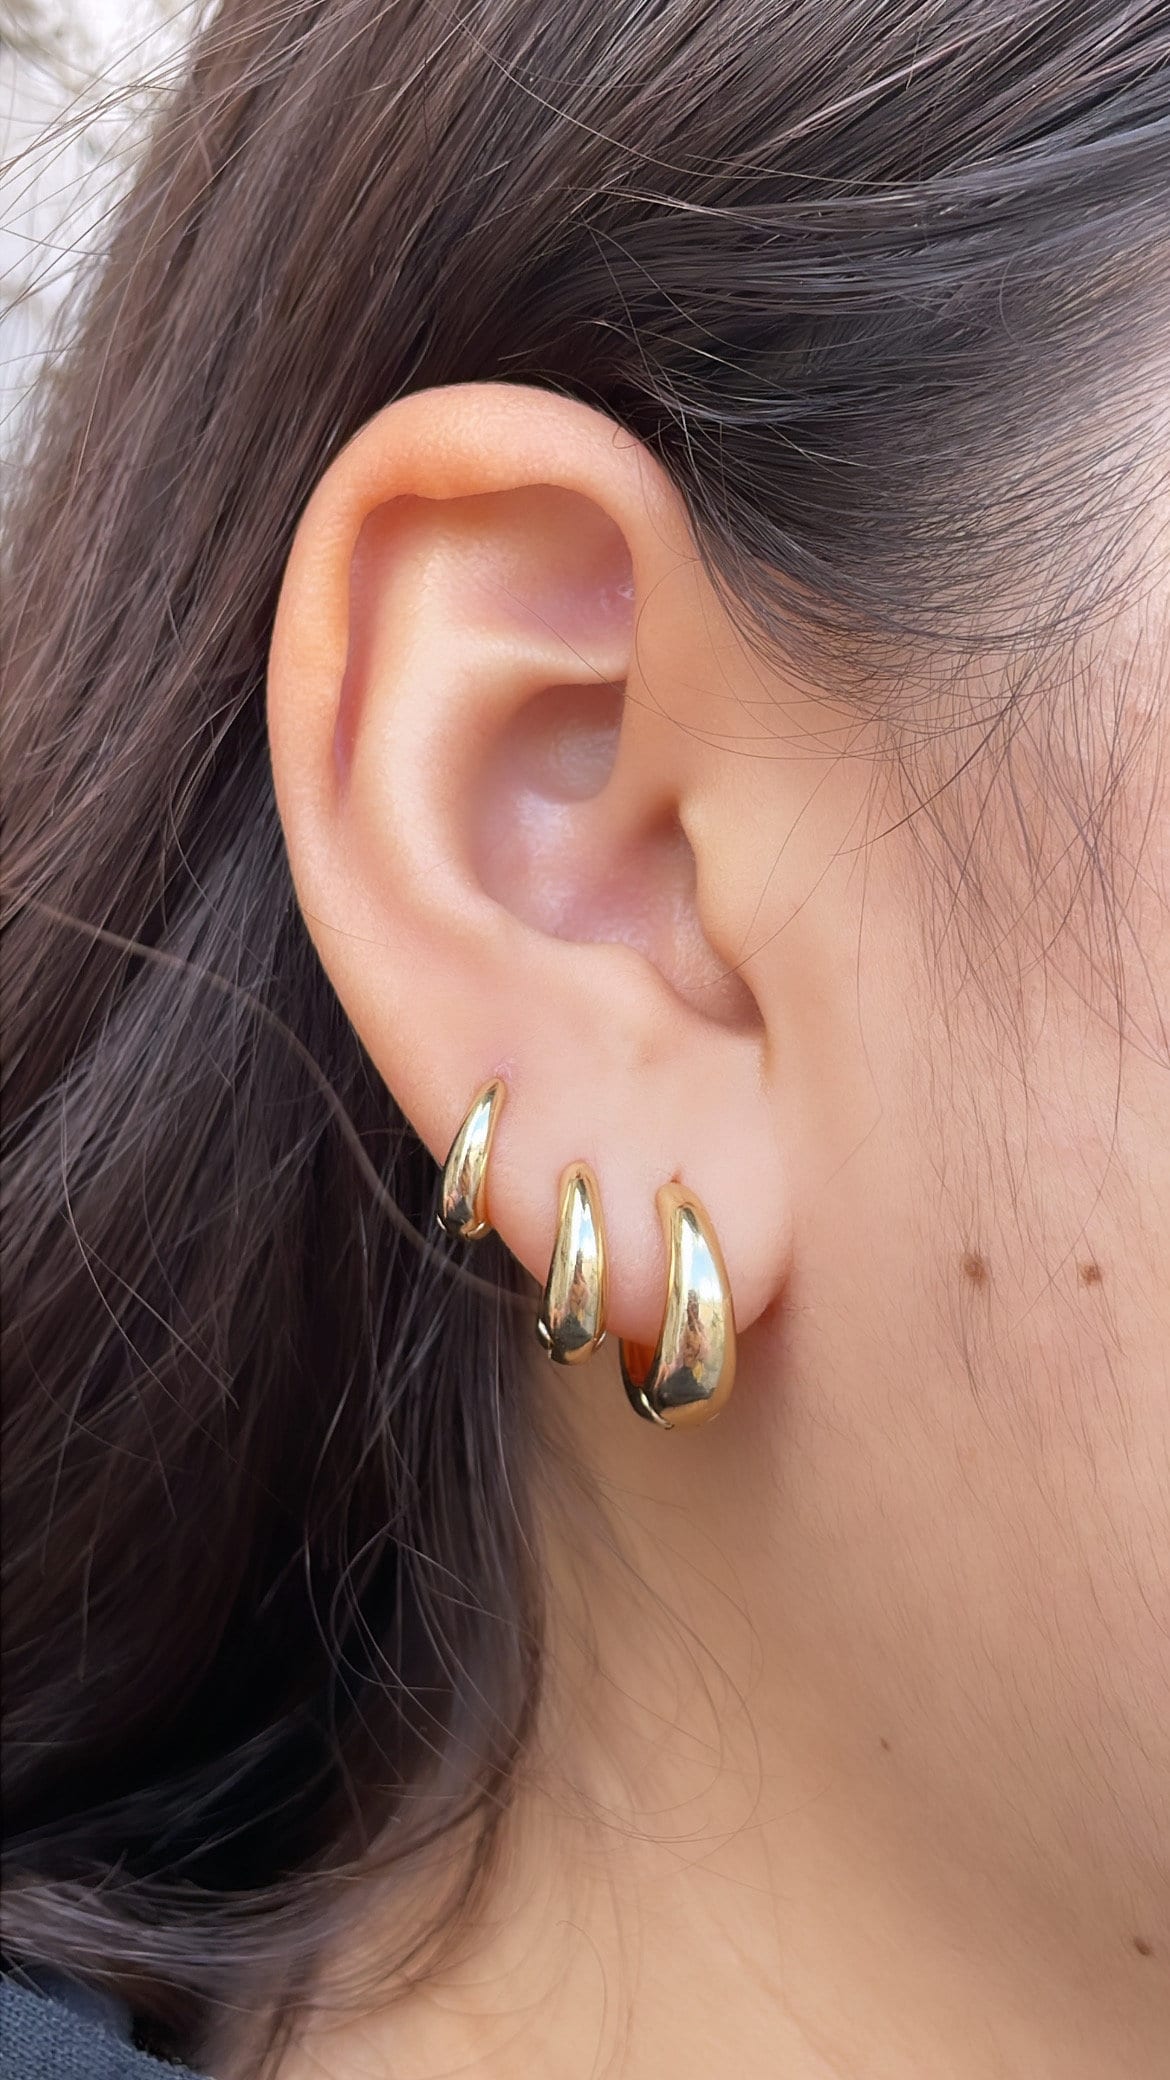 18k Gold Filled Plain Tear Drop Shaped Huggie Hoop Earrings In Three Sizes